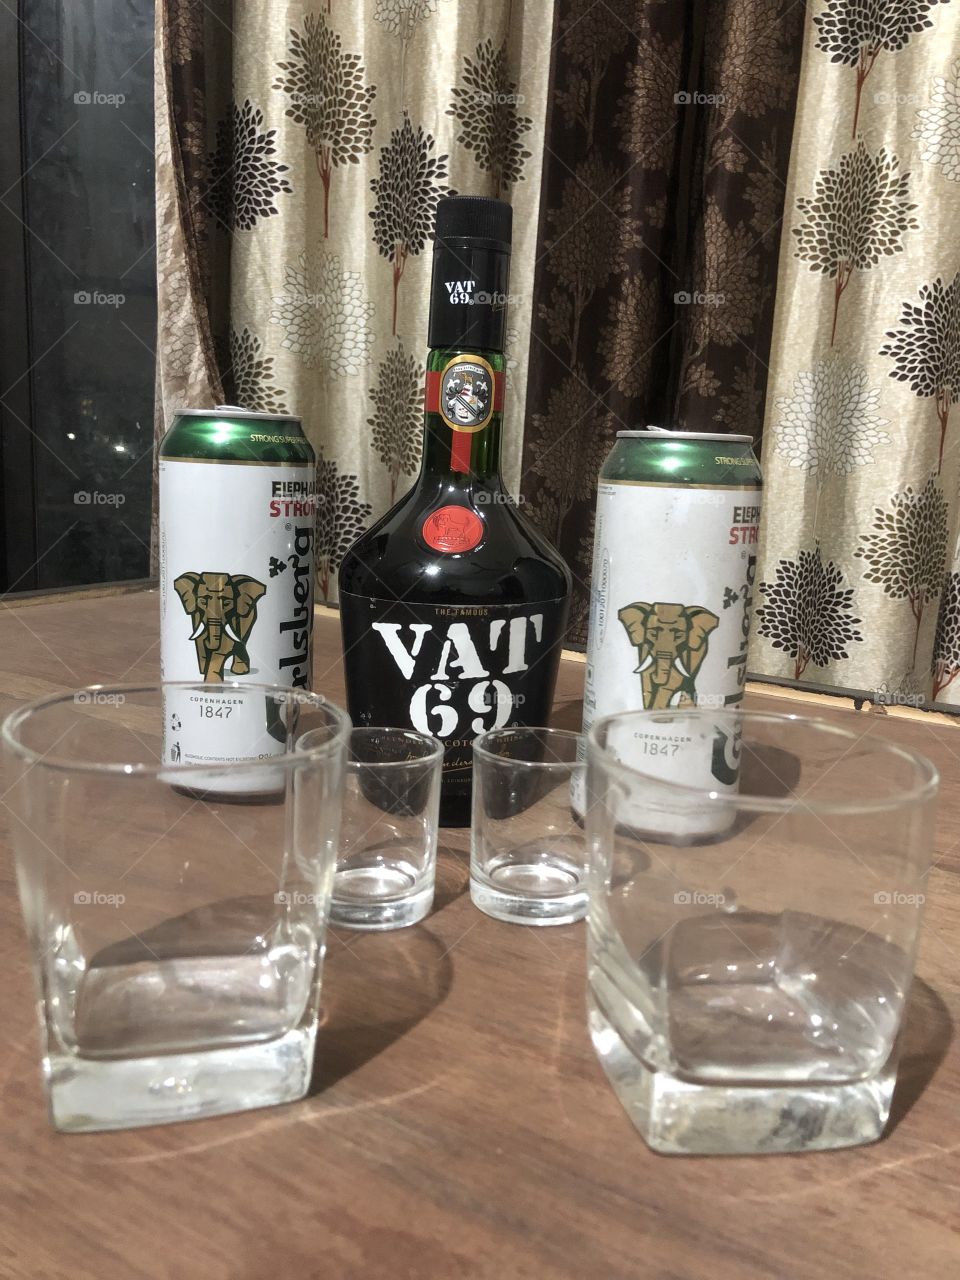 Beer with VAT 69